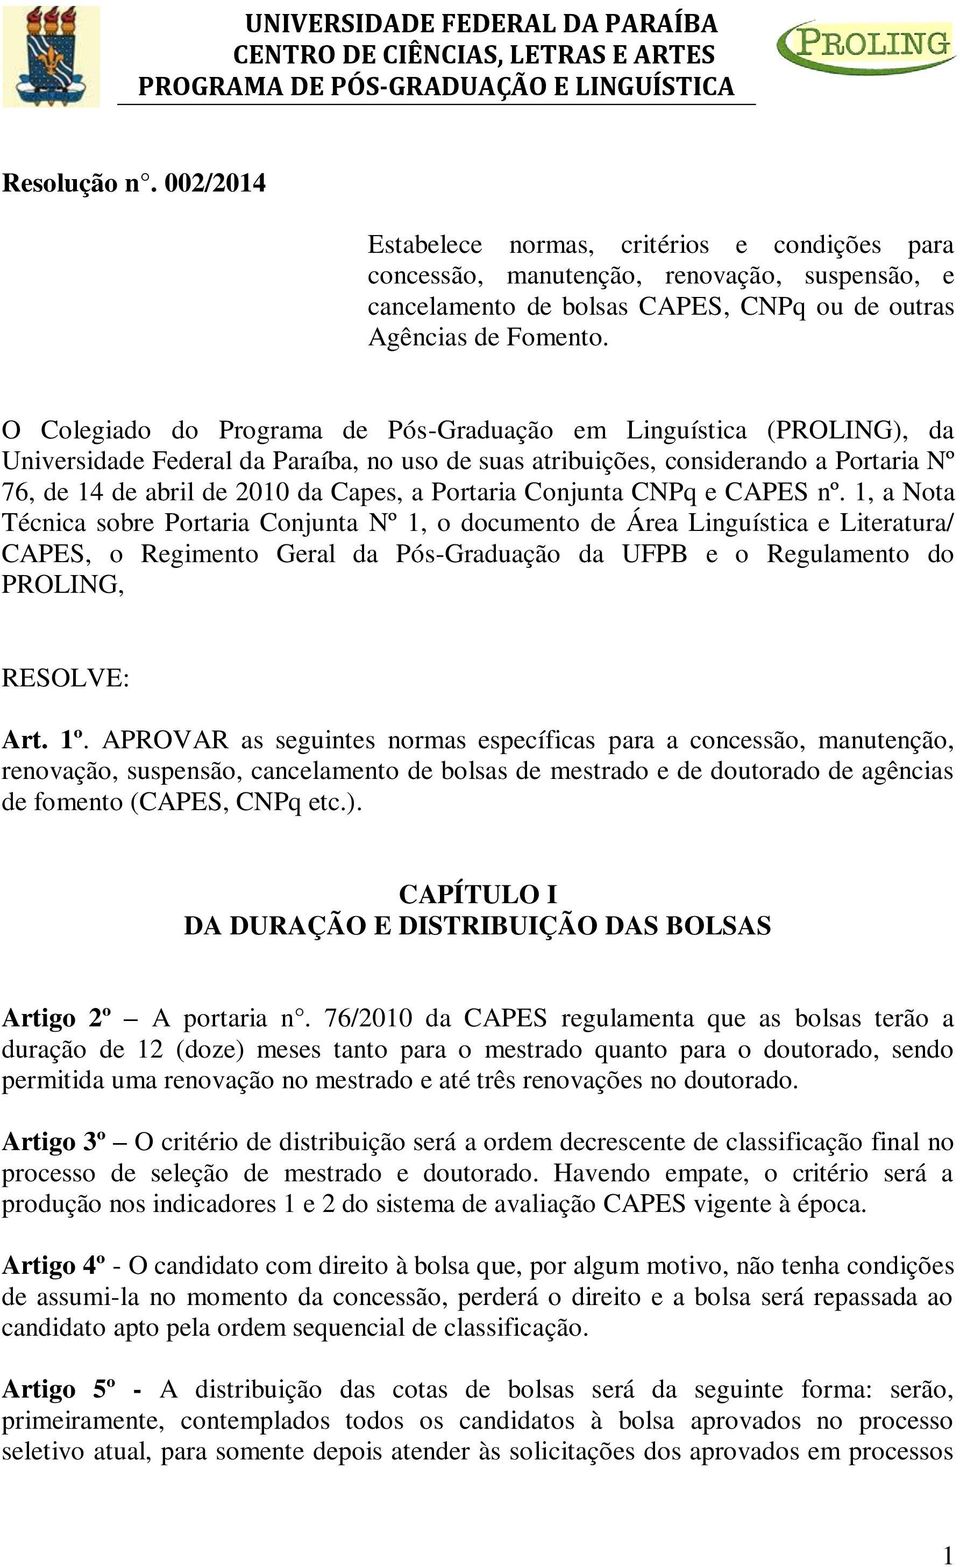 O Colegiado do Programa de Pós-Graduação em Linguística (PROLING), da Universidade Federal da Paraíba, no uso de suas atribuições, considerando a Portaria Nº 76, de 14 de abril de 2010 da Capes, a